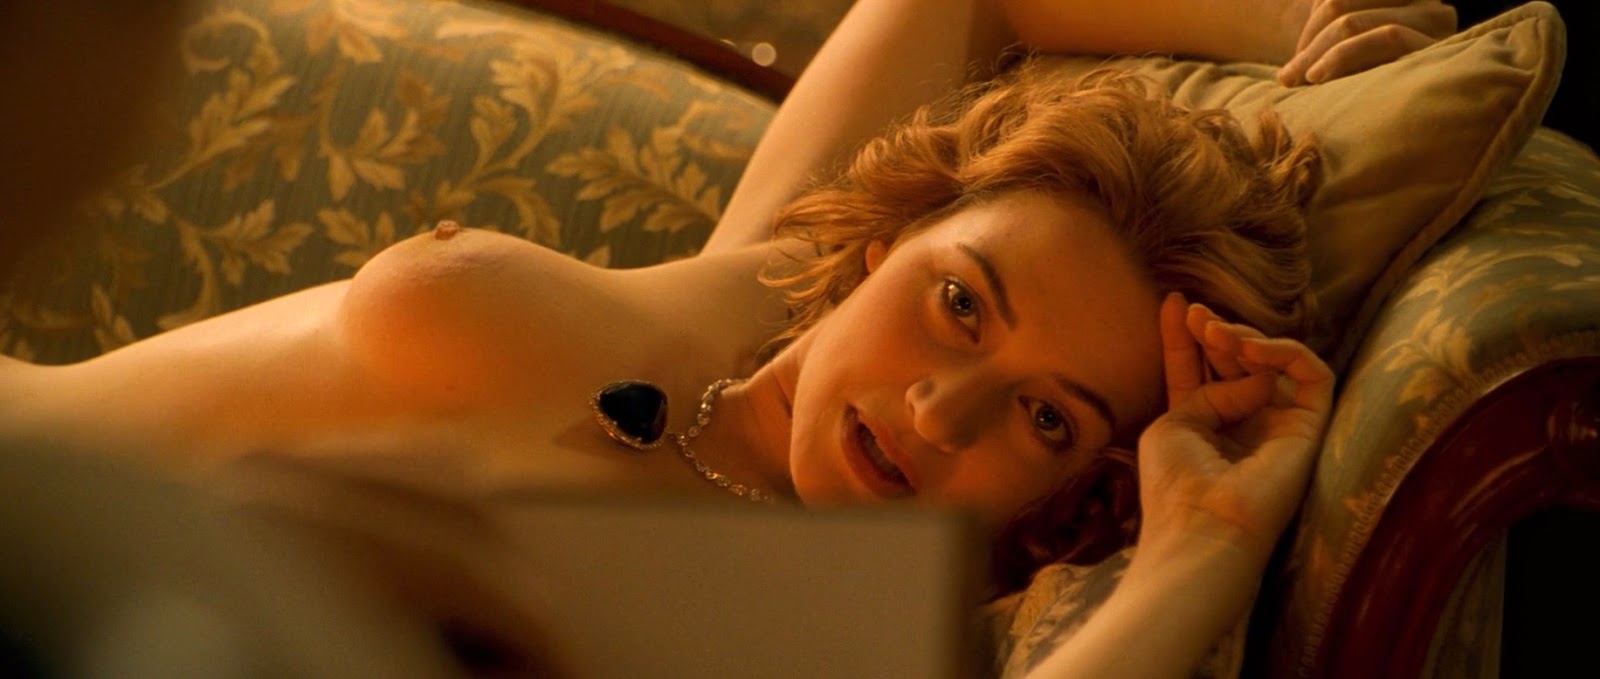 Самые обсуждаемые обнаженные сцены в кино Кейт Уинслет Титаник фильм голая.